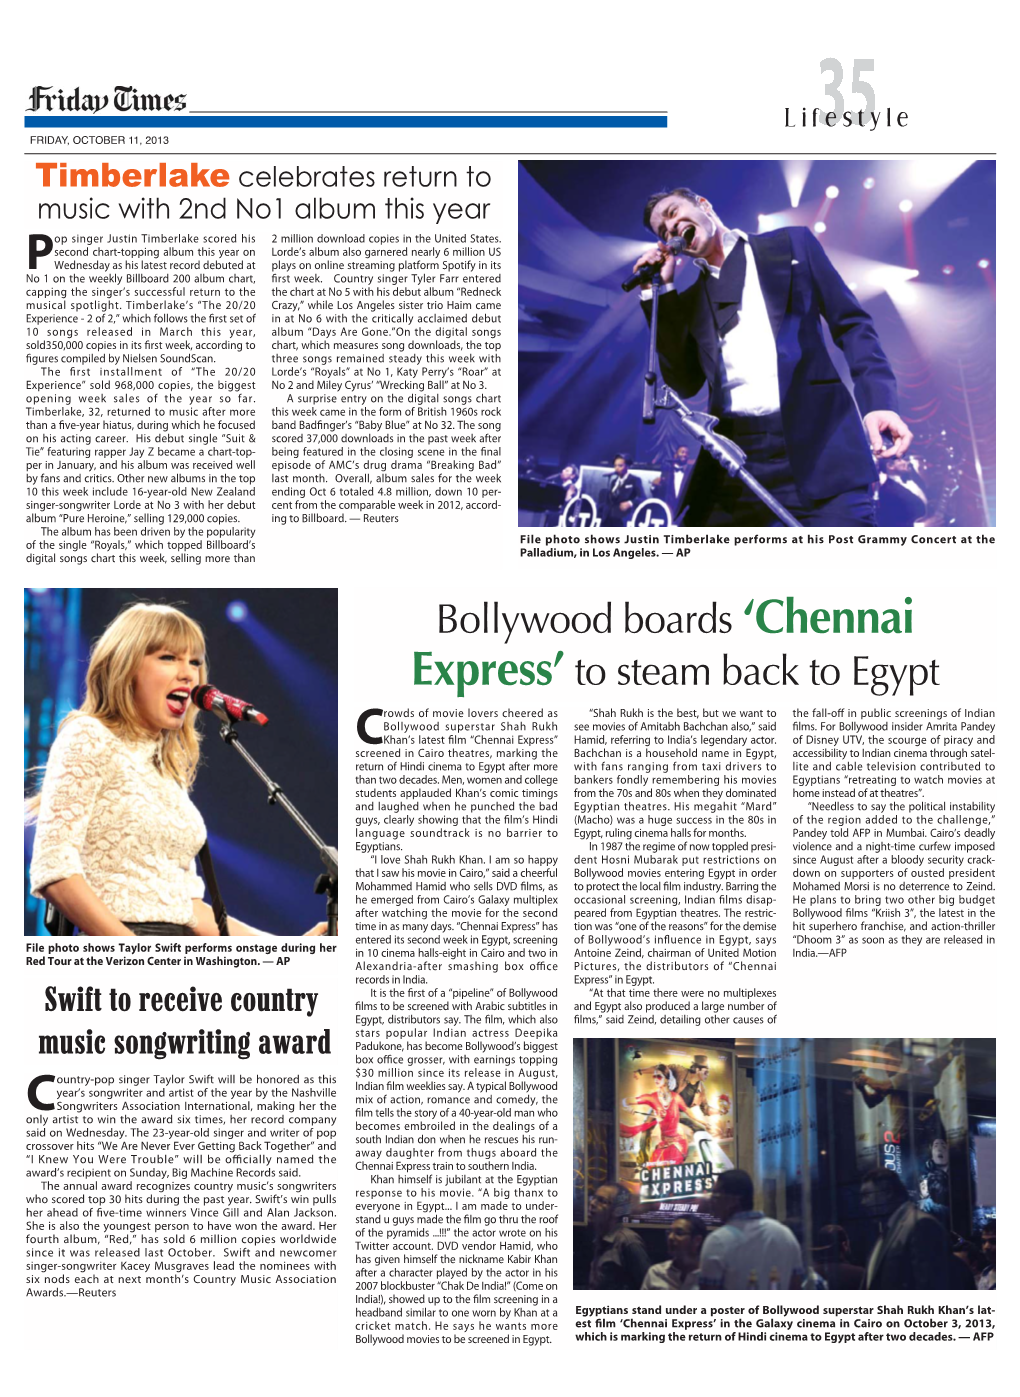 Bollywood Boards 'Chennai Express'